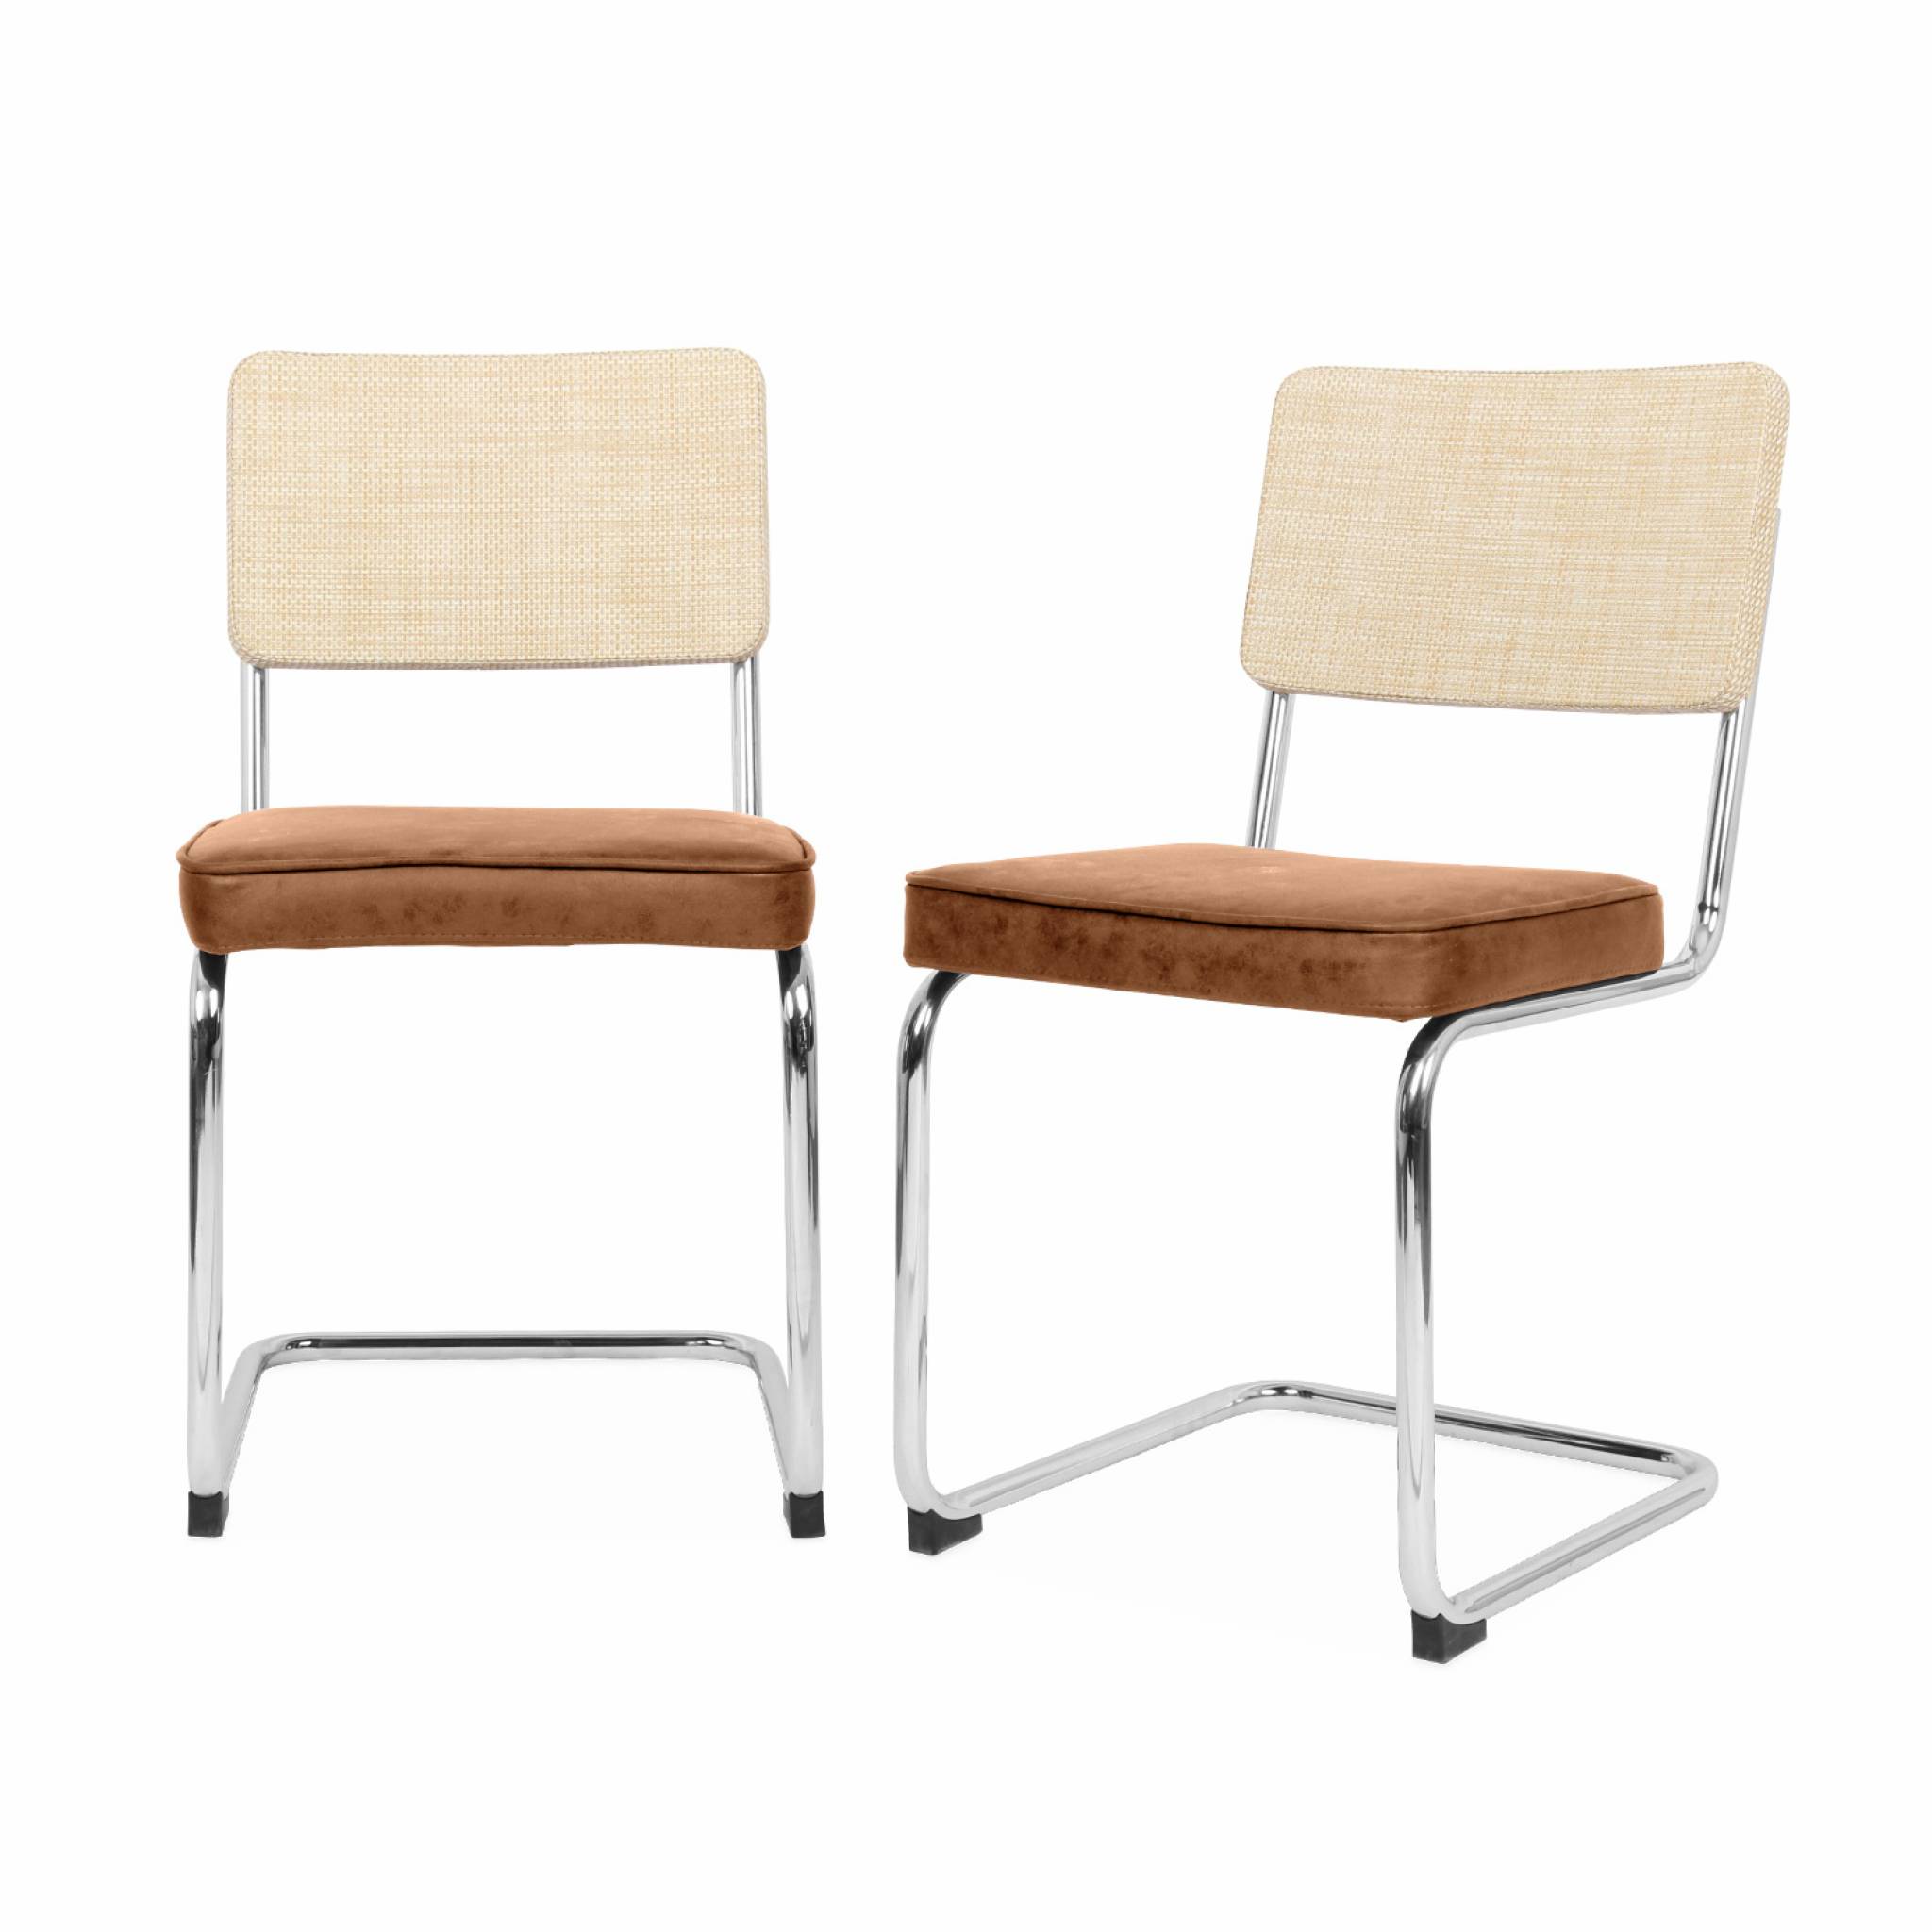 2 chaises cantilever, tissu marron clair et résine